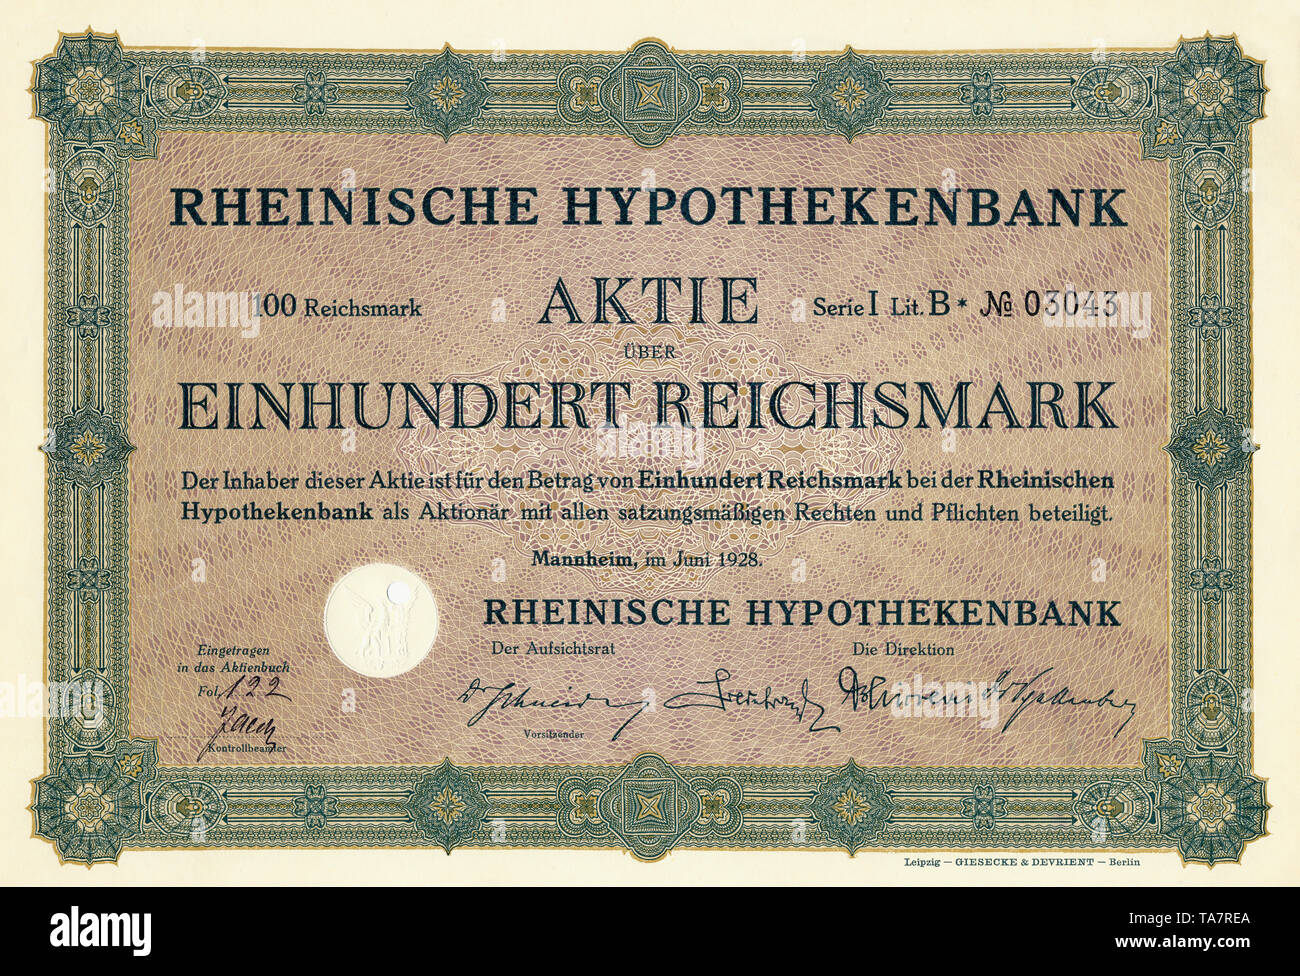 Historic stock certificate, Reichsmarks obligation, Germany, Historische Aktie über 100 Reichsmark, Rheinische Hypothekenbank, Mannheim, 1928, Deutschland, Europa Stock Photo